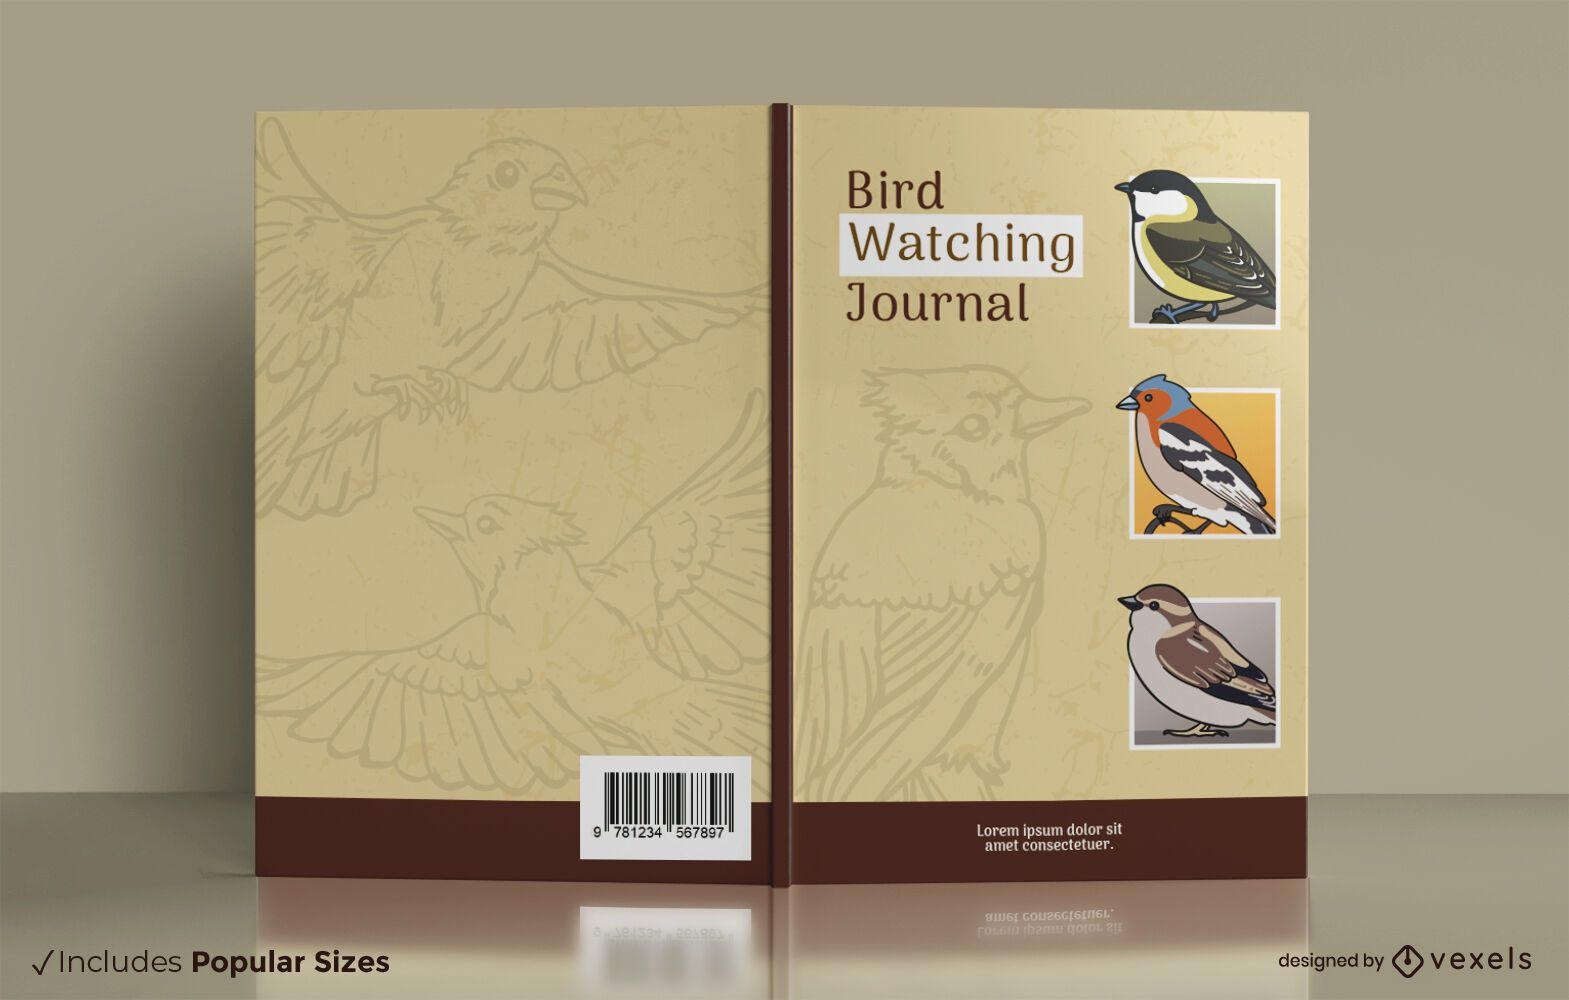 Bird watching journal cover design